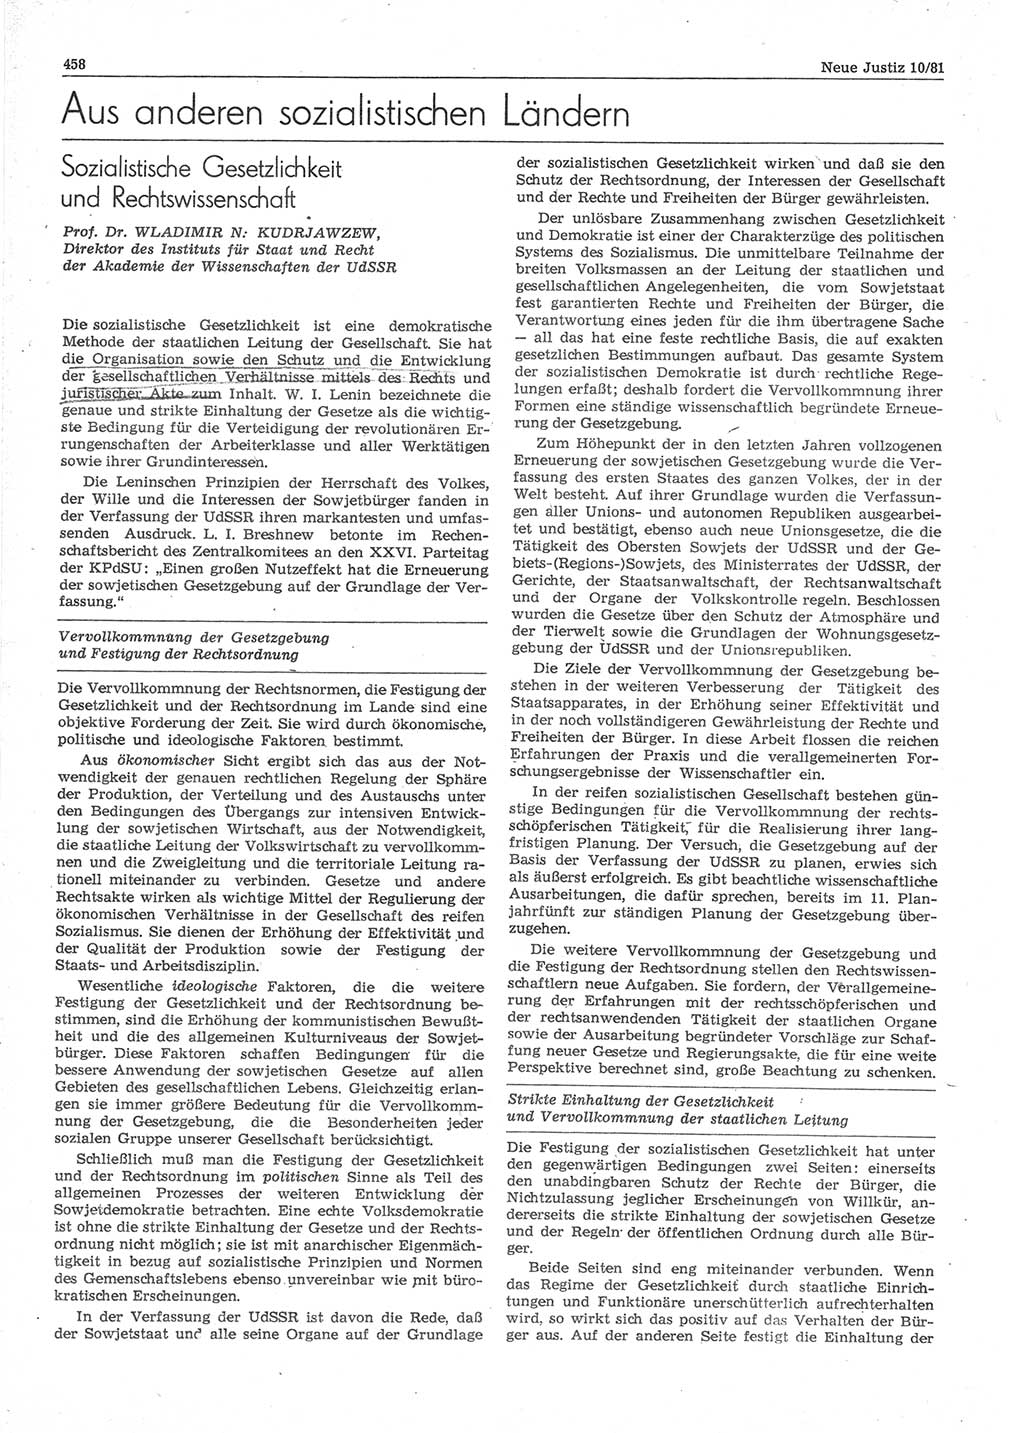 Neue Justiz (NJ), Zeitschrift für sozialistisches Recht und Gesetzlichkeit [Deutsche Demokratische Republik (DDR)], 35. Jahrgang 1981, Seite 458 (NJ DDR 1981, S. 458)